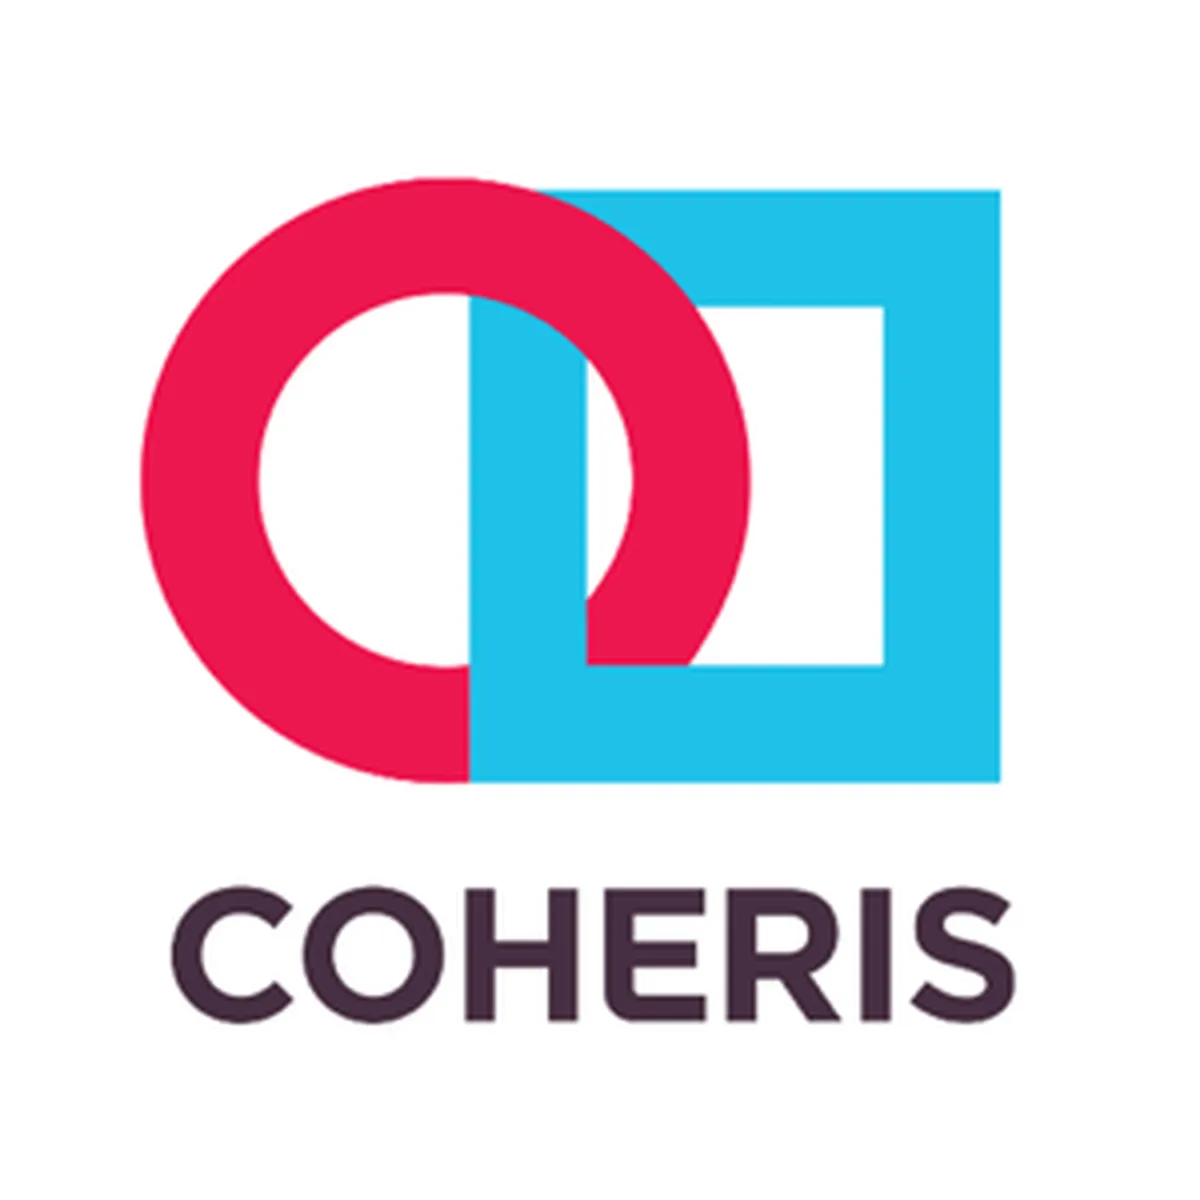 Coheris Liberty Enterprise Review